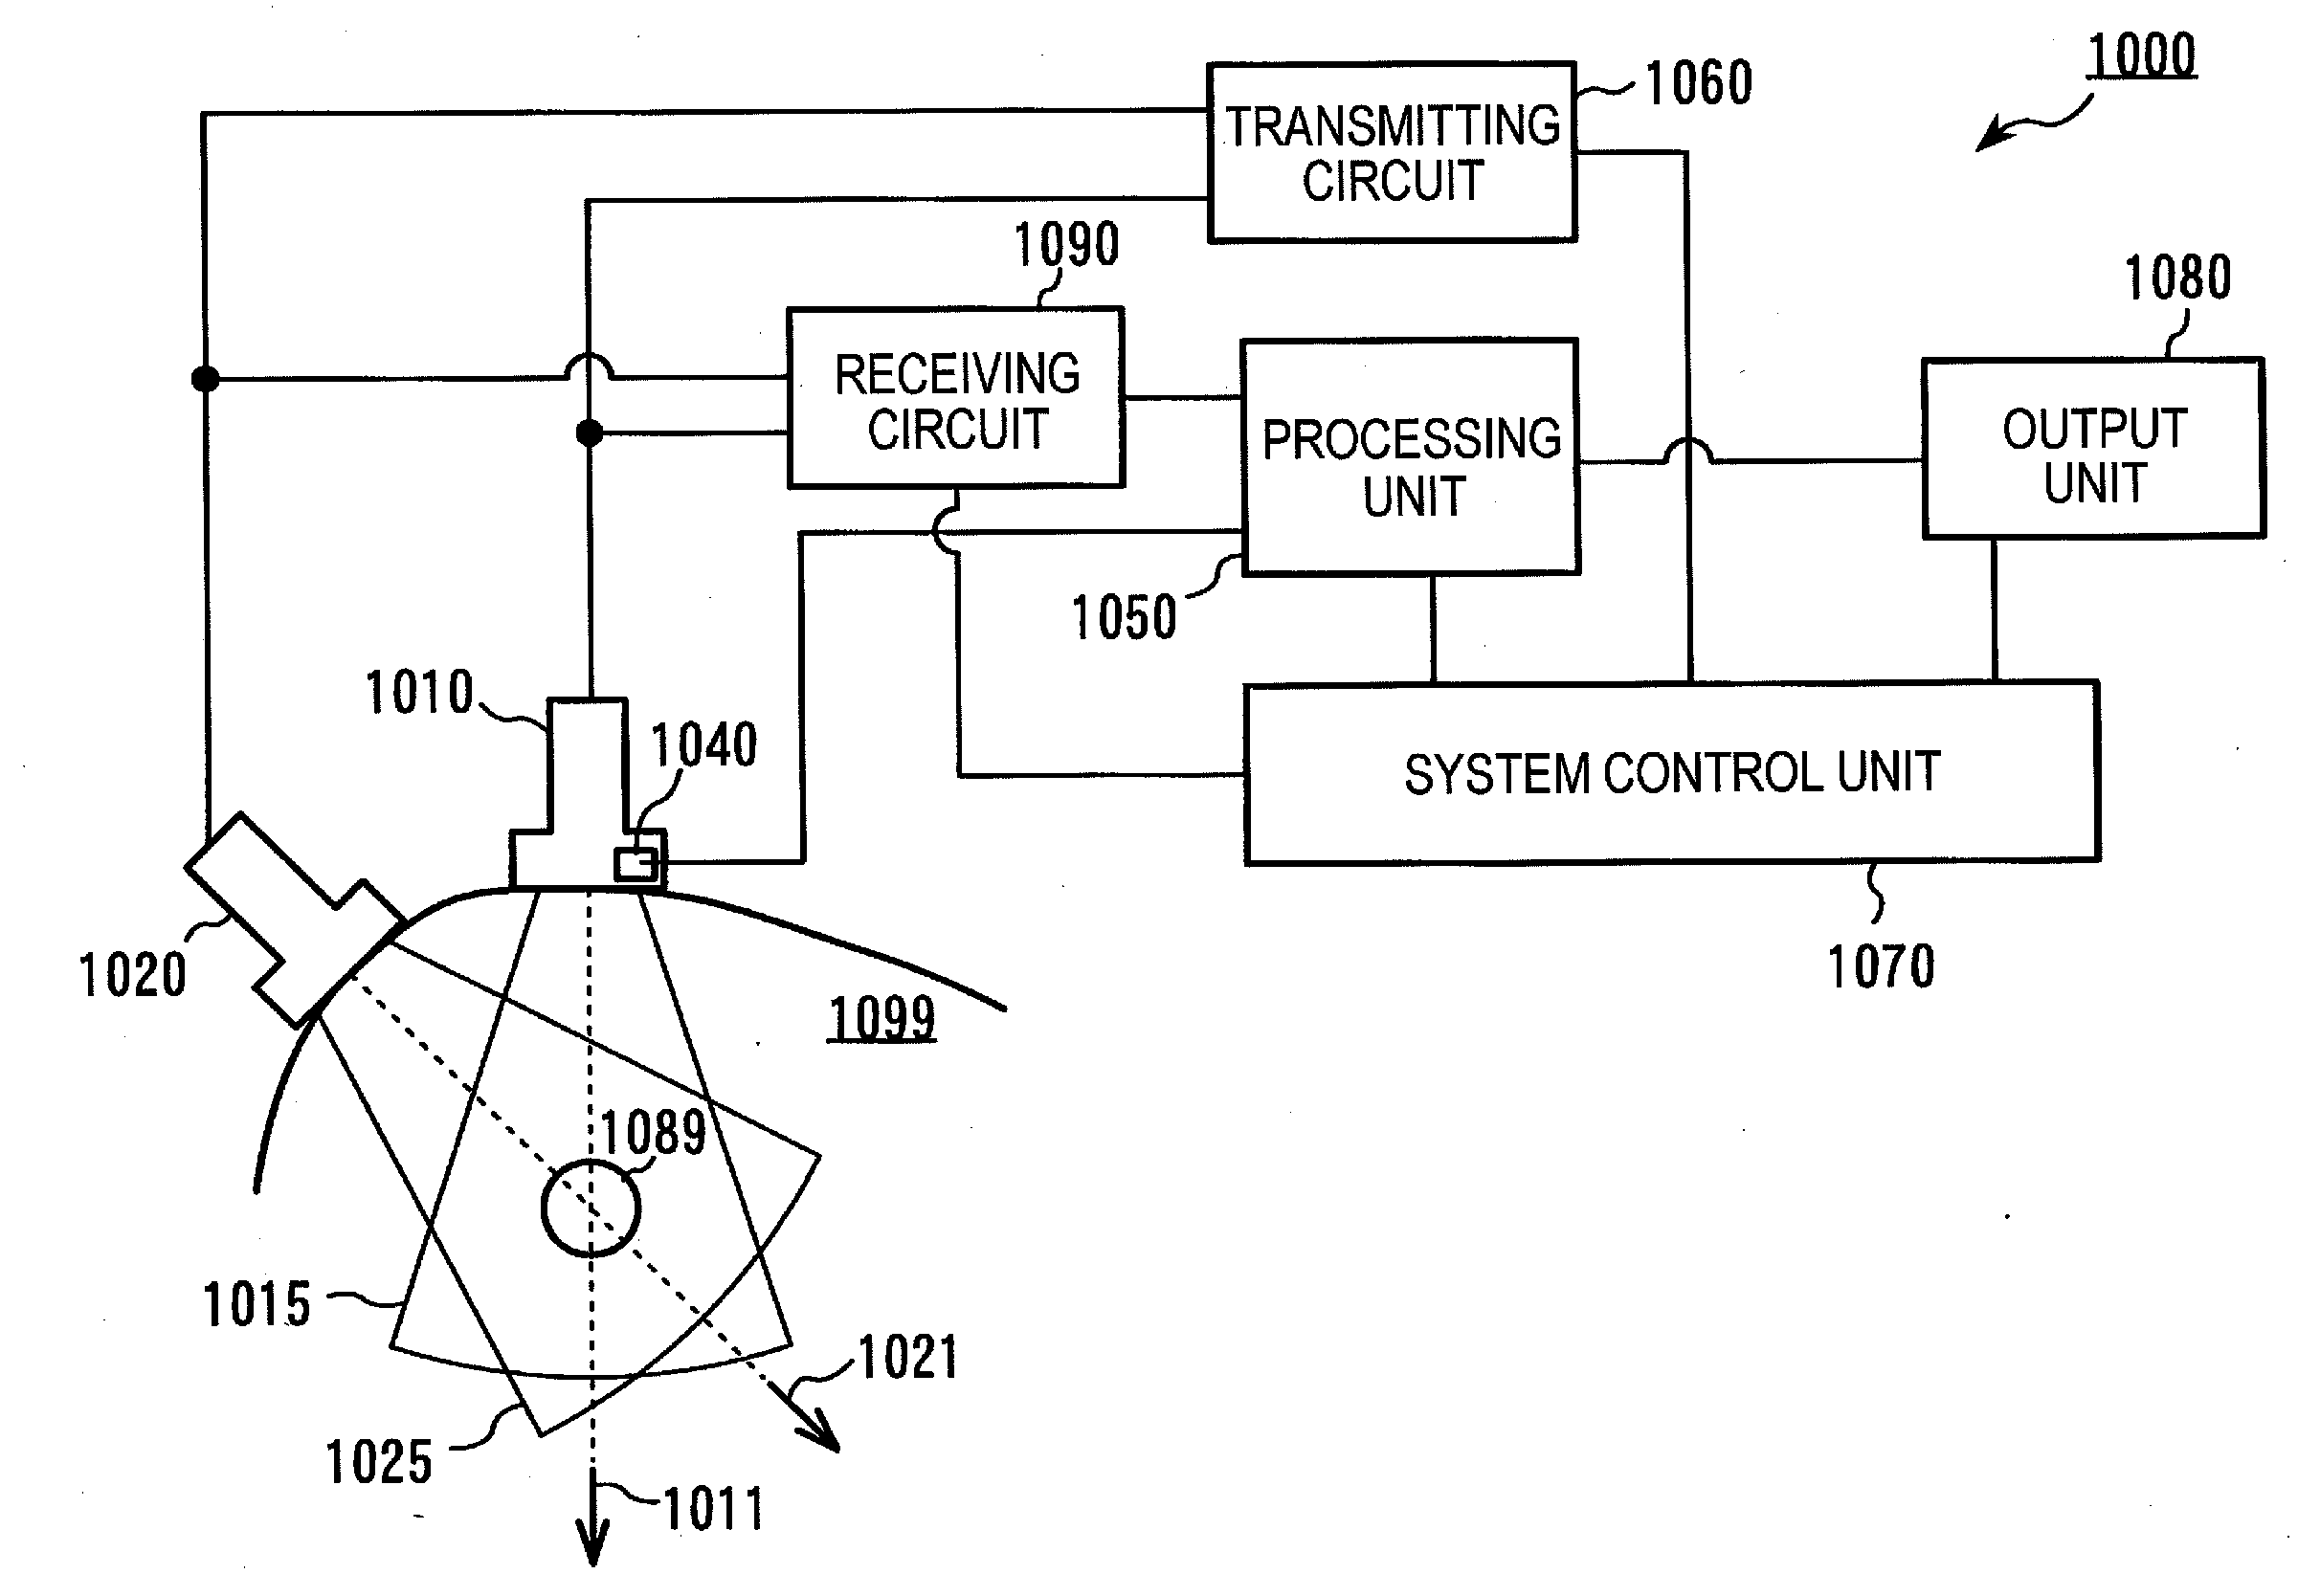 Ultrasonic measurement apparatus